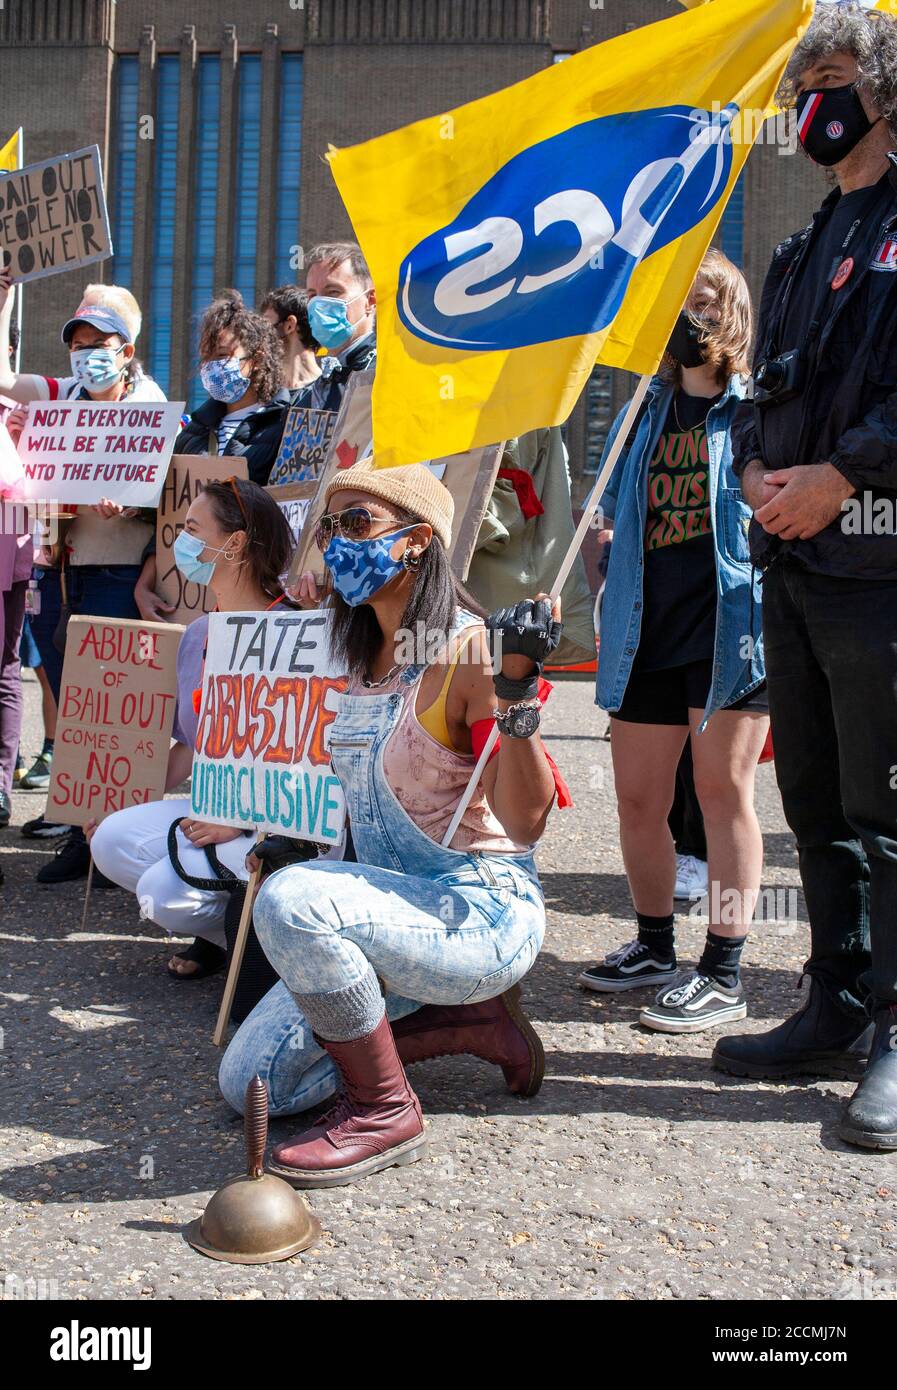 Des manifestants devant la galerie d'art moderne de Tate, manifestant contre les suppressions d'emplois proposées en 313 par les entreprises de Tate. Londres, Angleterre, Royaume-Uni Banque D'Images